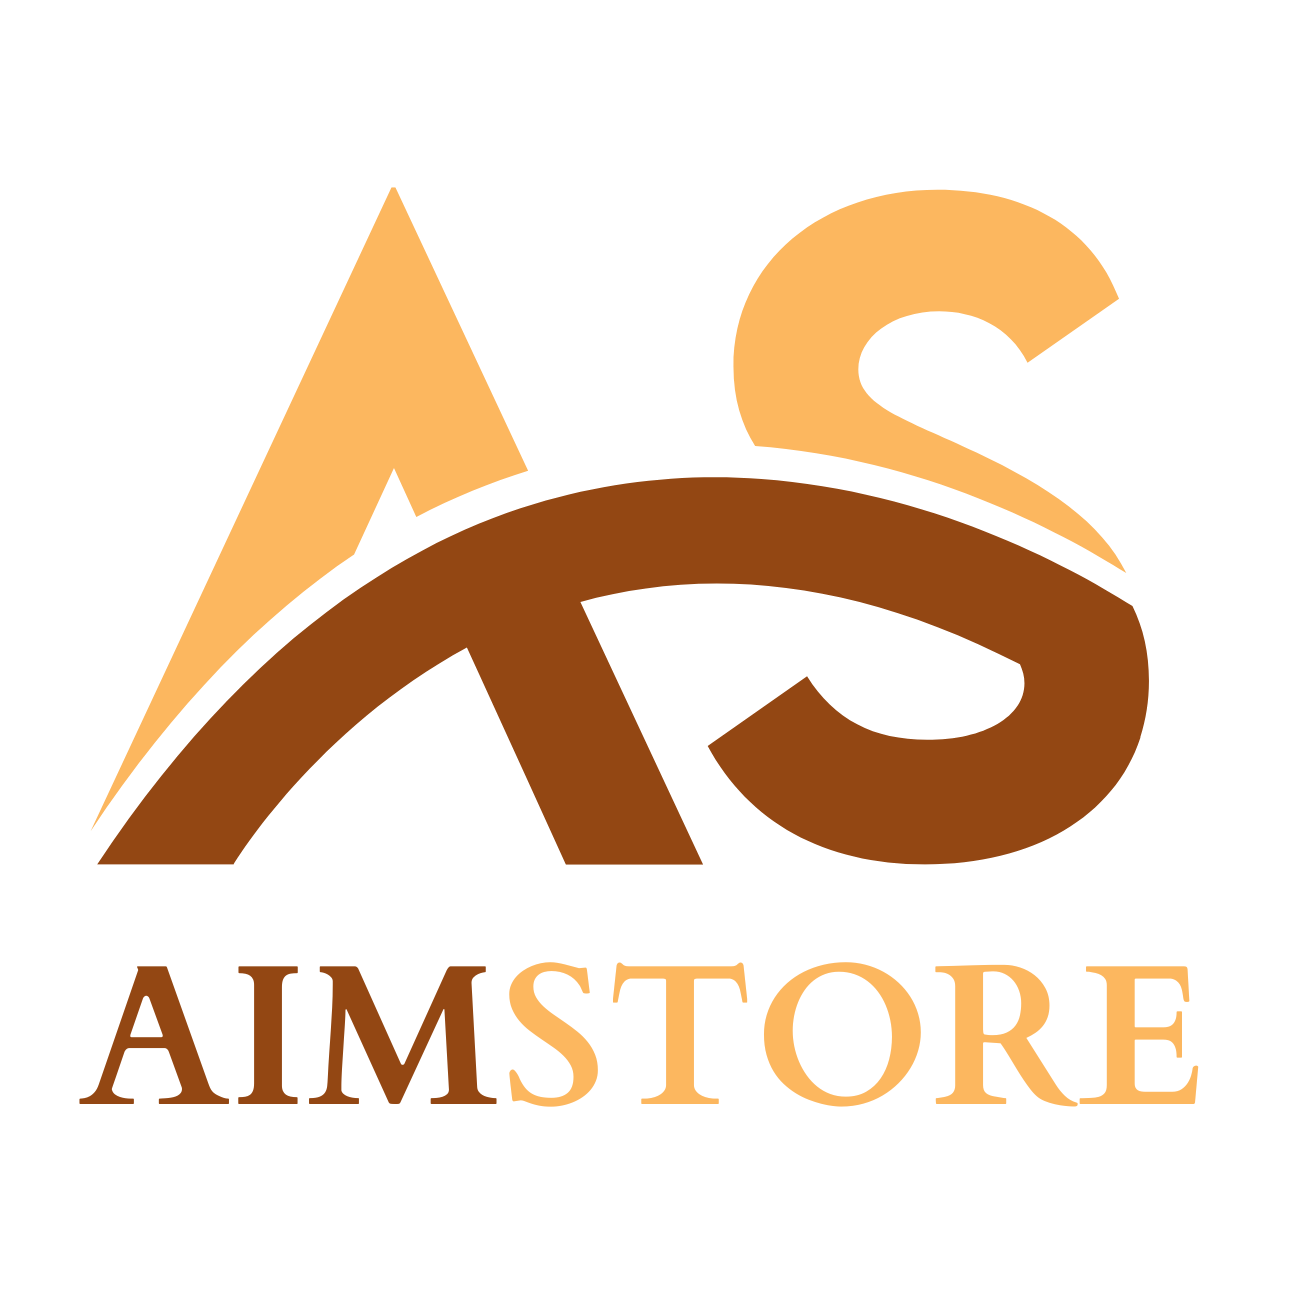 Aim Store